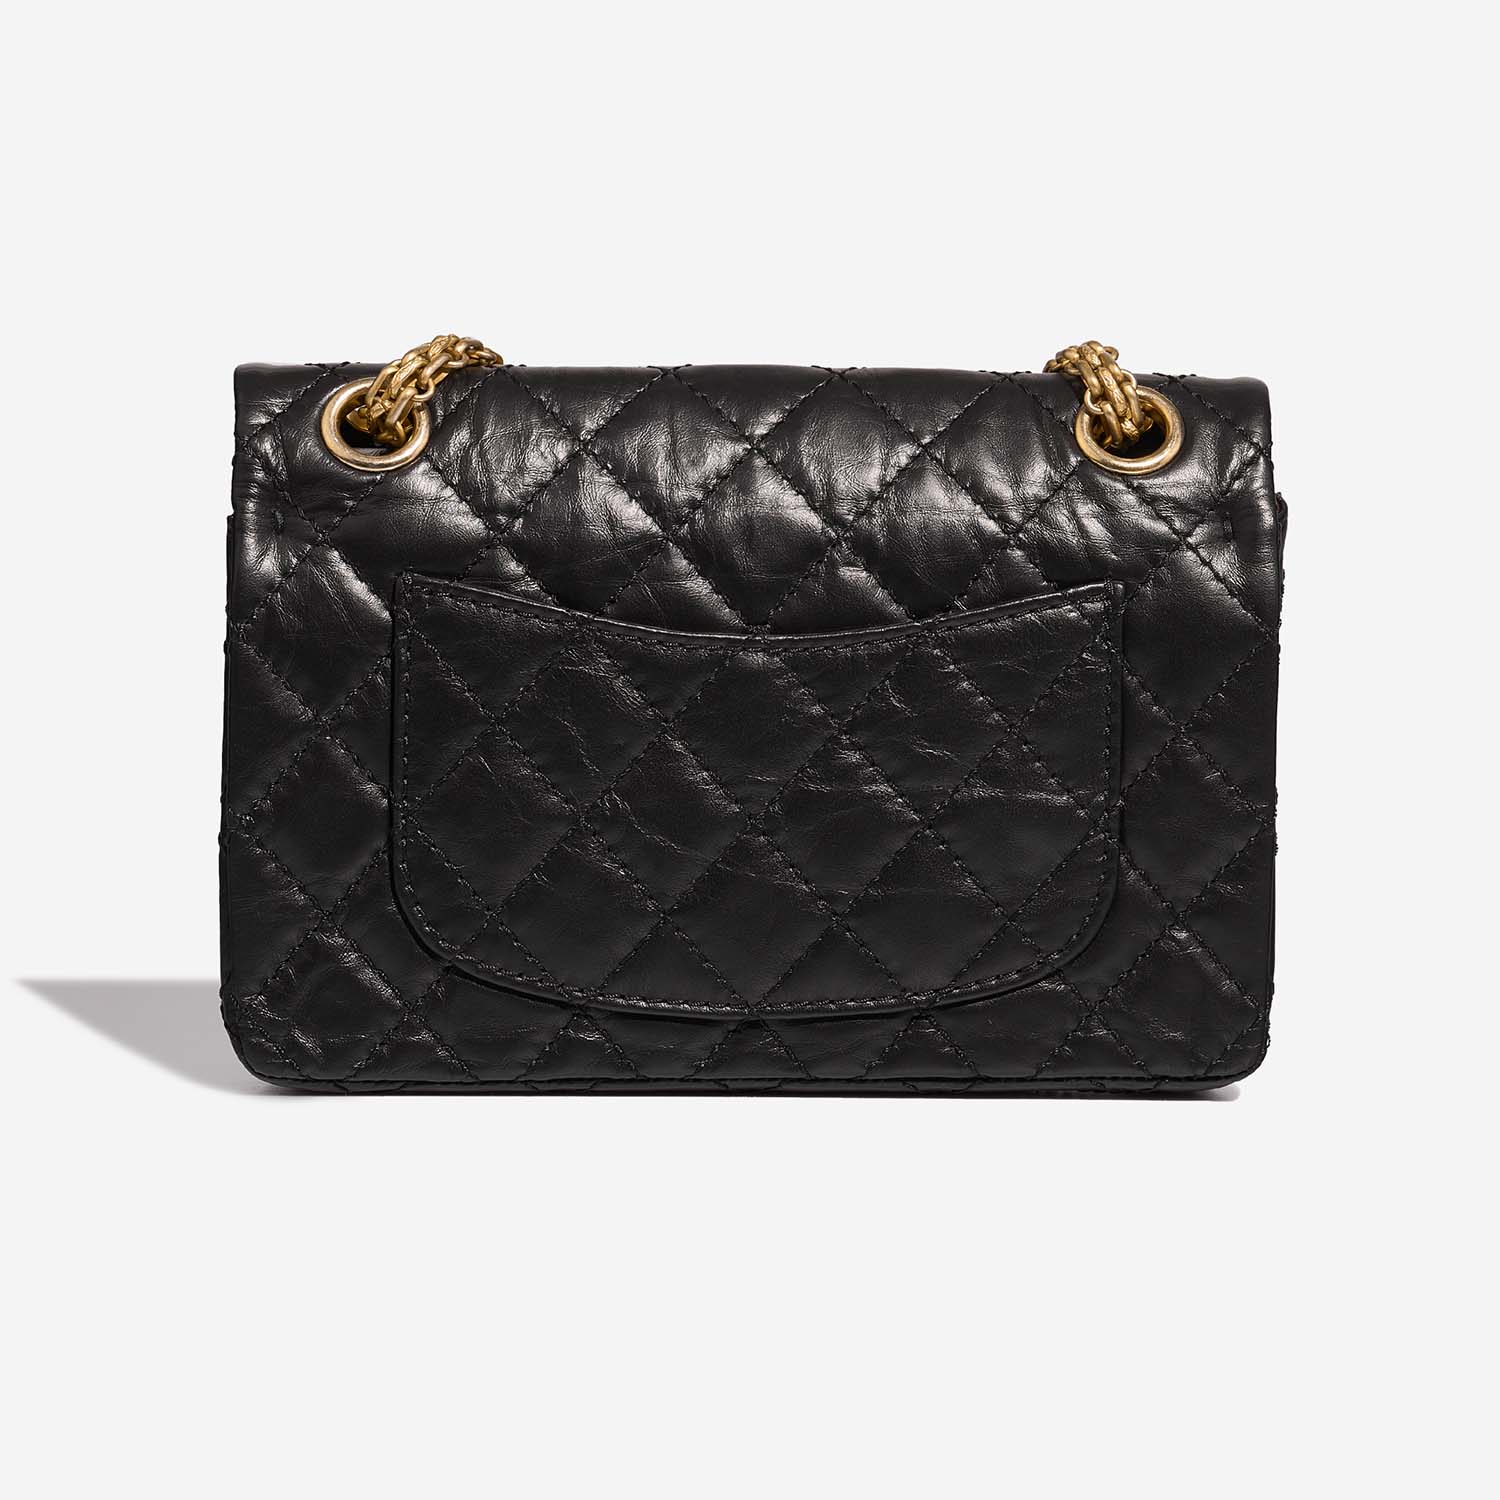 Chanel 255 225 Black Back | Verkaufen Sie Ihre Designer-Tasche auf Saclab.com